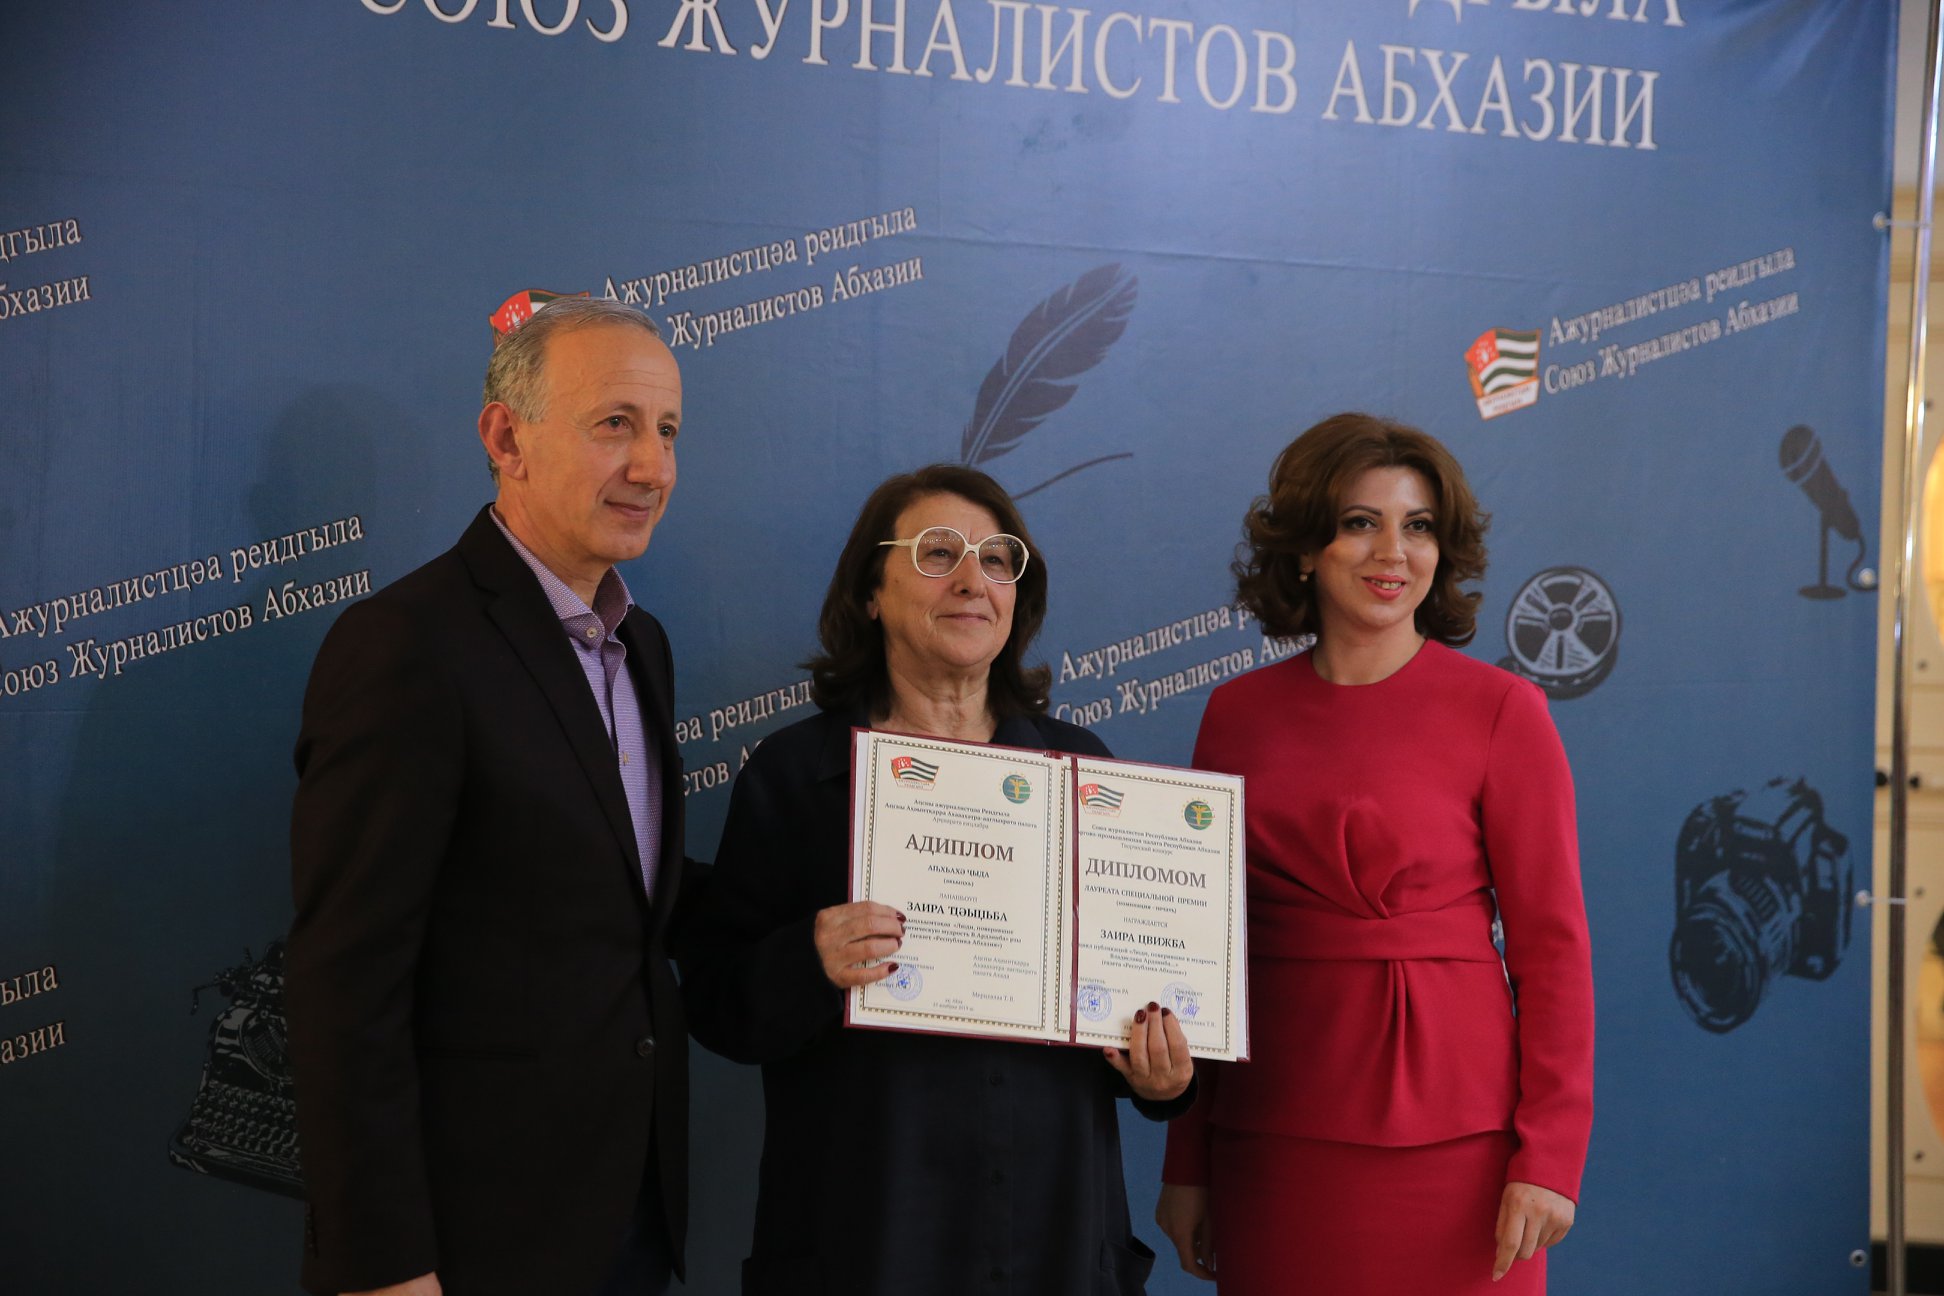 مشاركة السيد تاميلا ميرتسخولافا في حفل تسليم شهادات الدبلوم في المسابقة الإبداعية التي أقامها اتحاد الصحفيين الأبخاز .